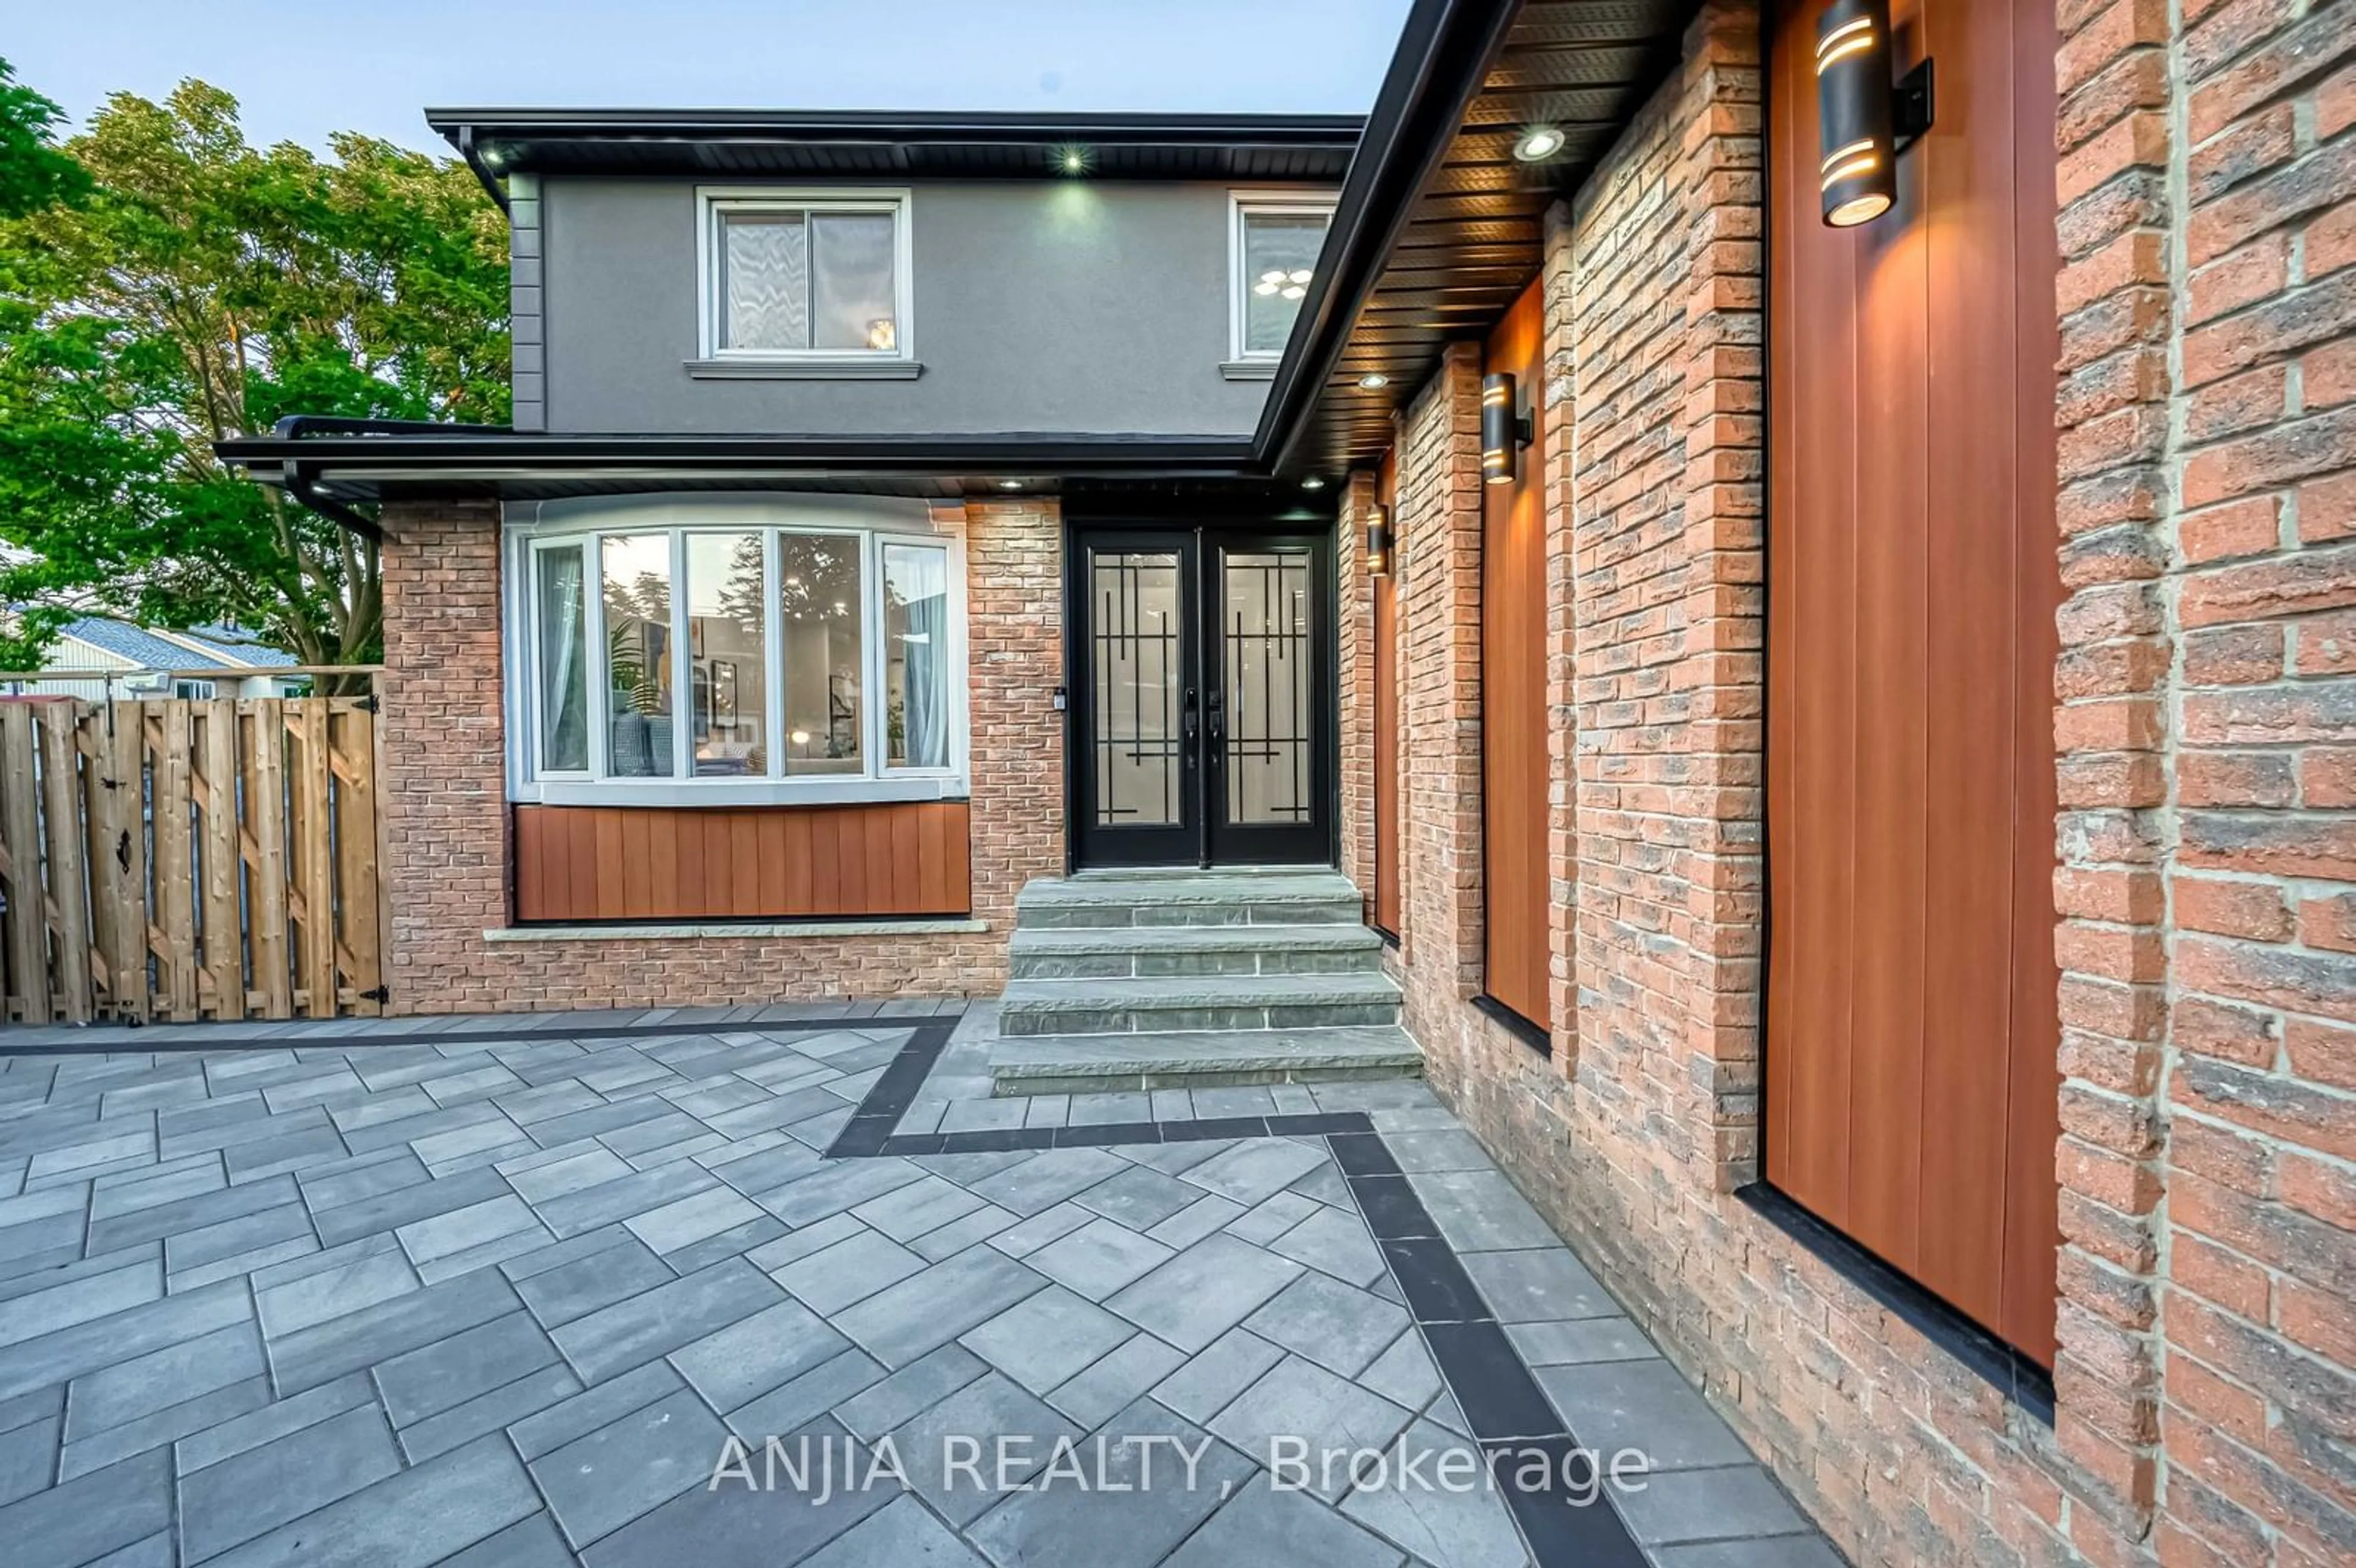 Home with brick exterior material for 91 Valdor Dr, Toronto Ontario M1V 1R3